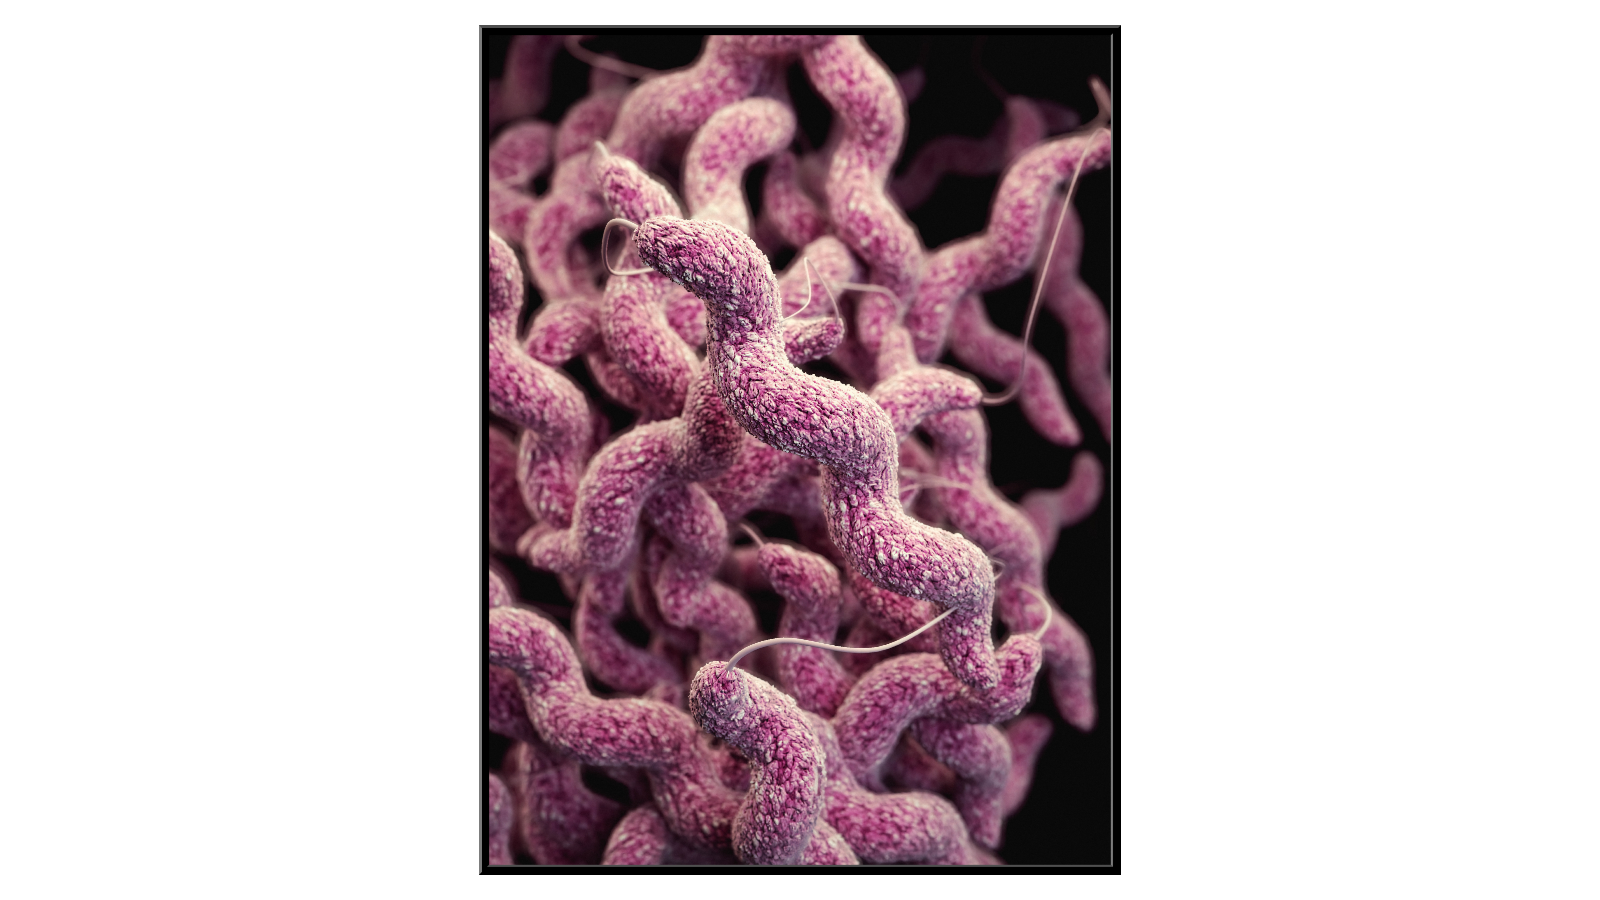 Campylobacter bacteria